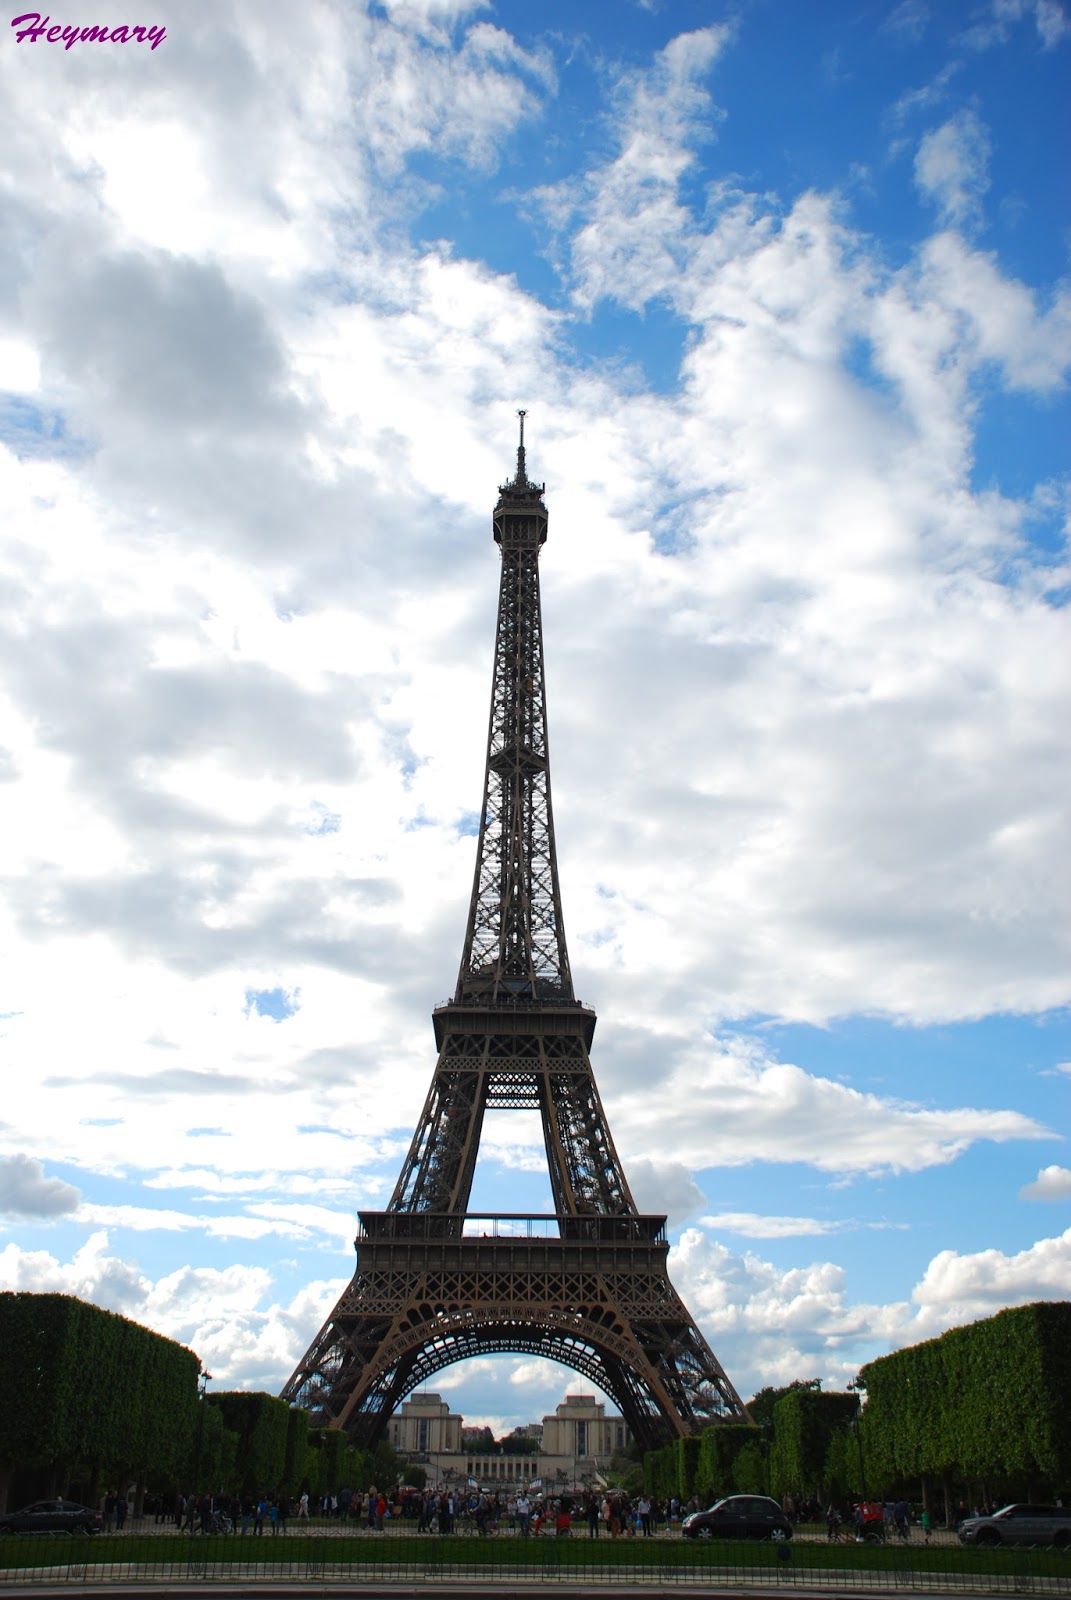 艾菲爾鐵塔Eiffel Tower 2017/05/20 1887年起建，而設計師為居斯塔夫．艾菲爾 分為三層，分別離地57.6米，115.7米，276.1米，一、二樓為餐廳，三樓為觀景台，塔座有1711級階梯，共7000噸鋼鐵，12000個金屬部件，250萬顆鉚釘，模仿人體骨頭為建，鏤空結構鐵塔，塔高300公尺，總高320公尺